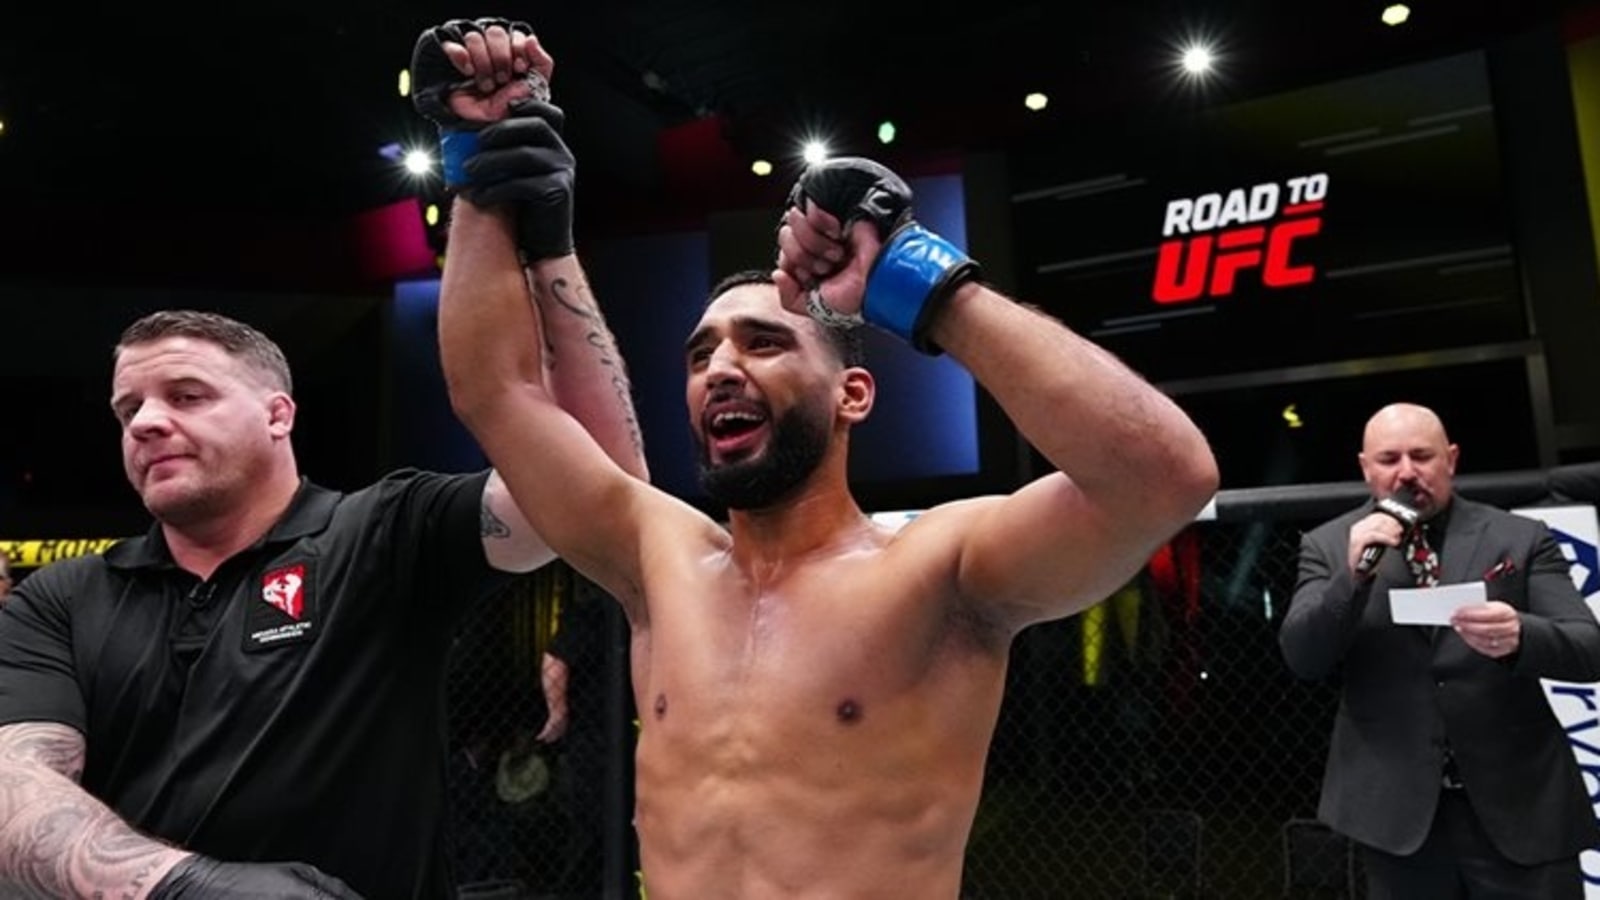 Anshul Jubli dari India memenangkan kontrak UFC, mengalahkan Jeka Saragih di final Road To UFC